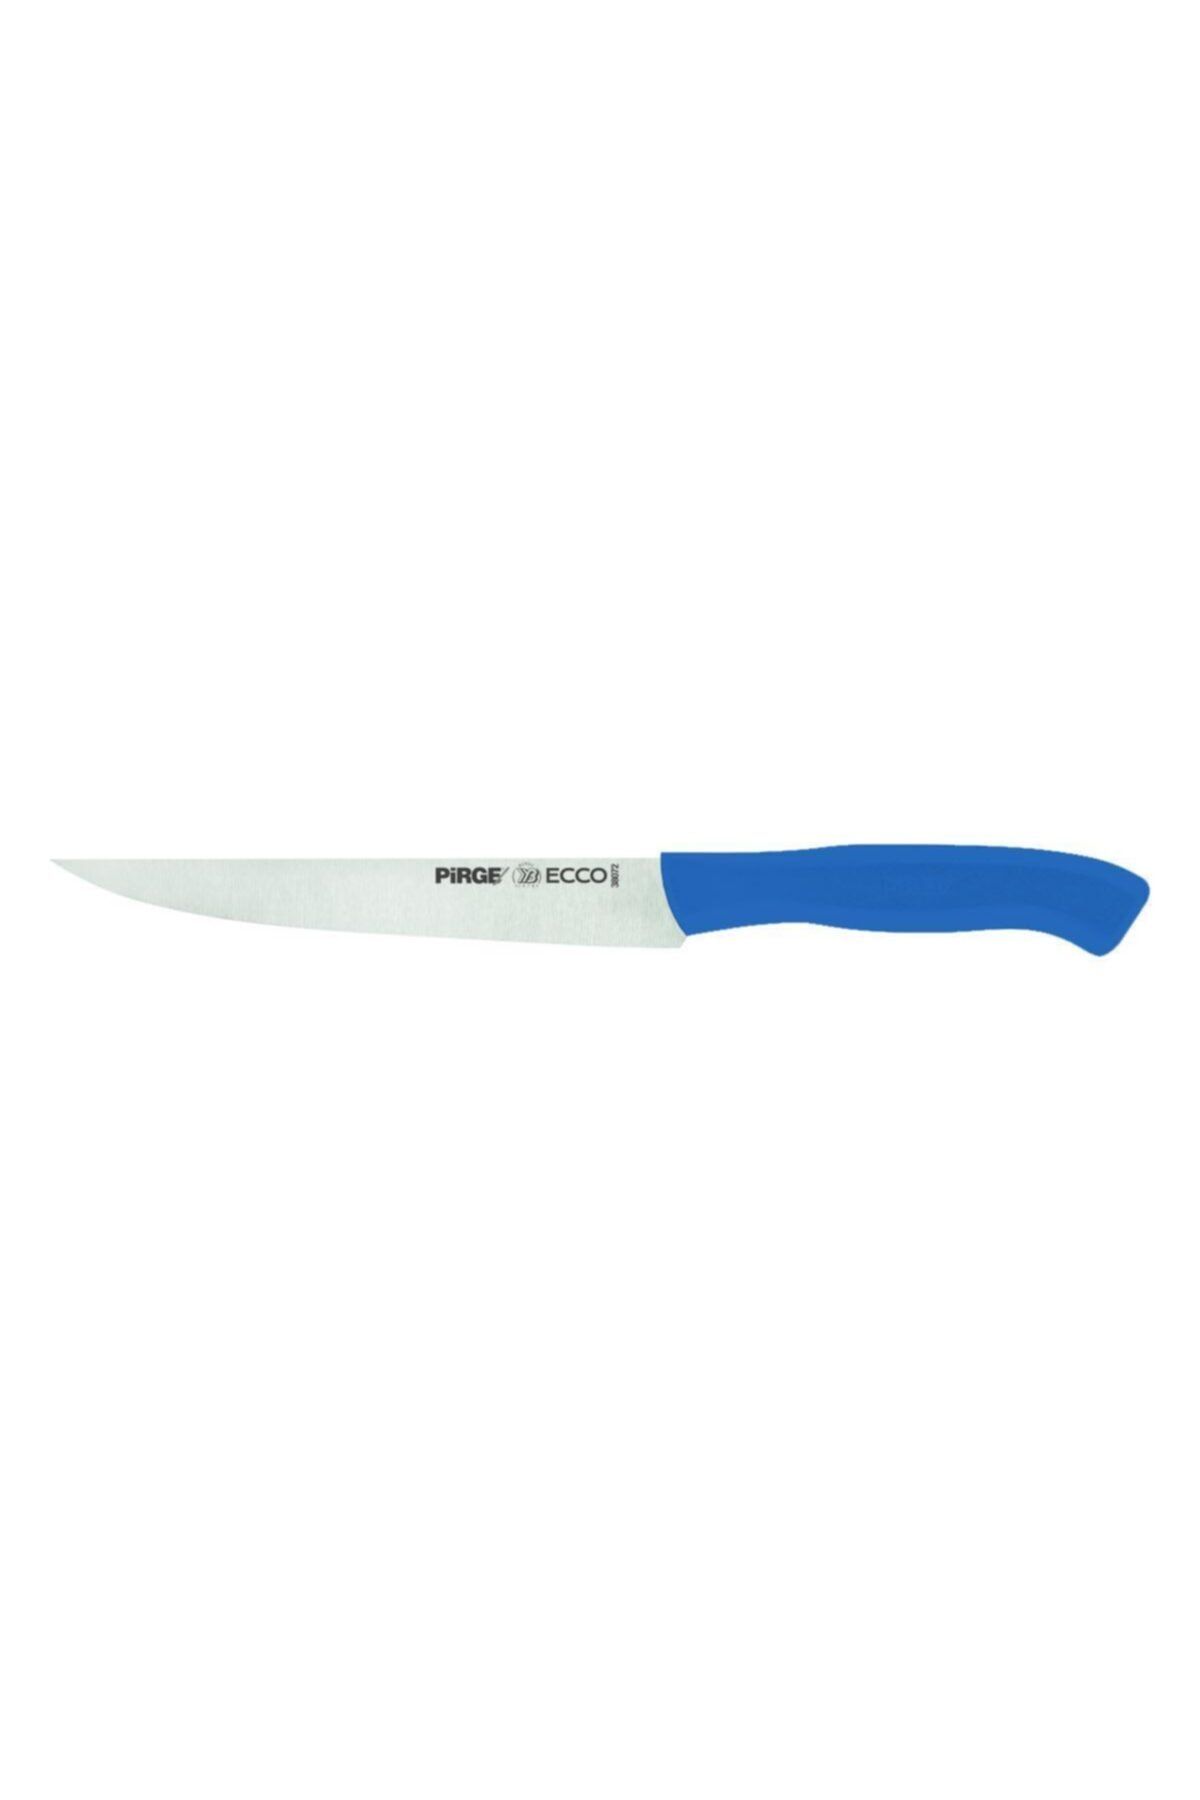 Pirge Ecco Peynir Bıçağı 17.5 Cm Mavi